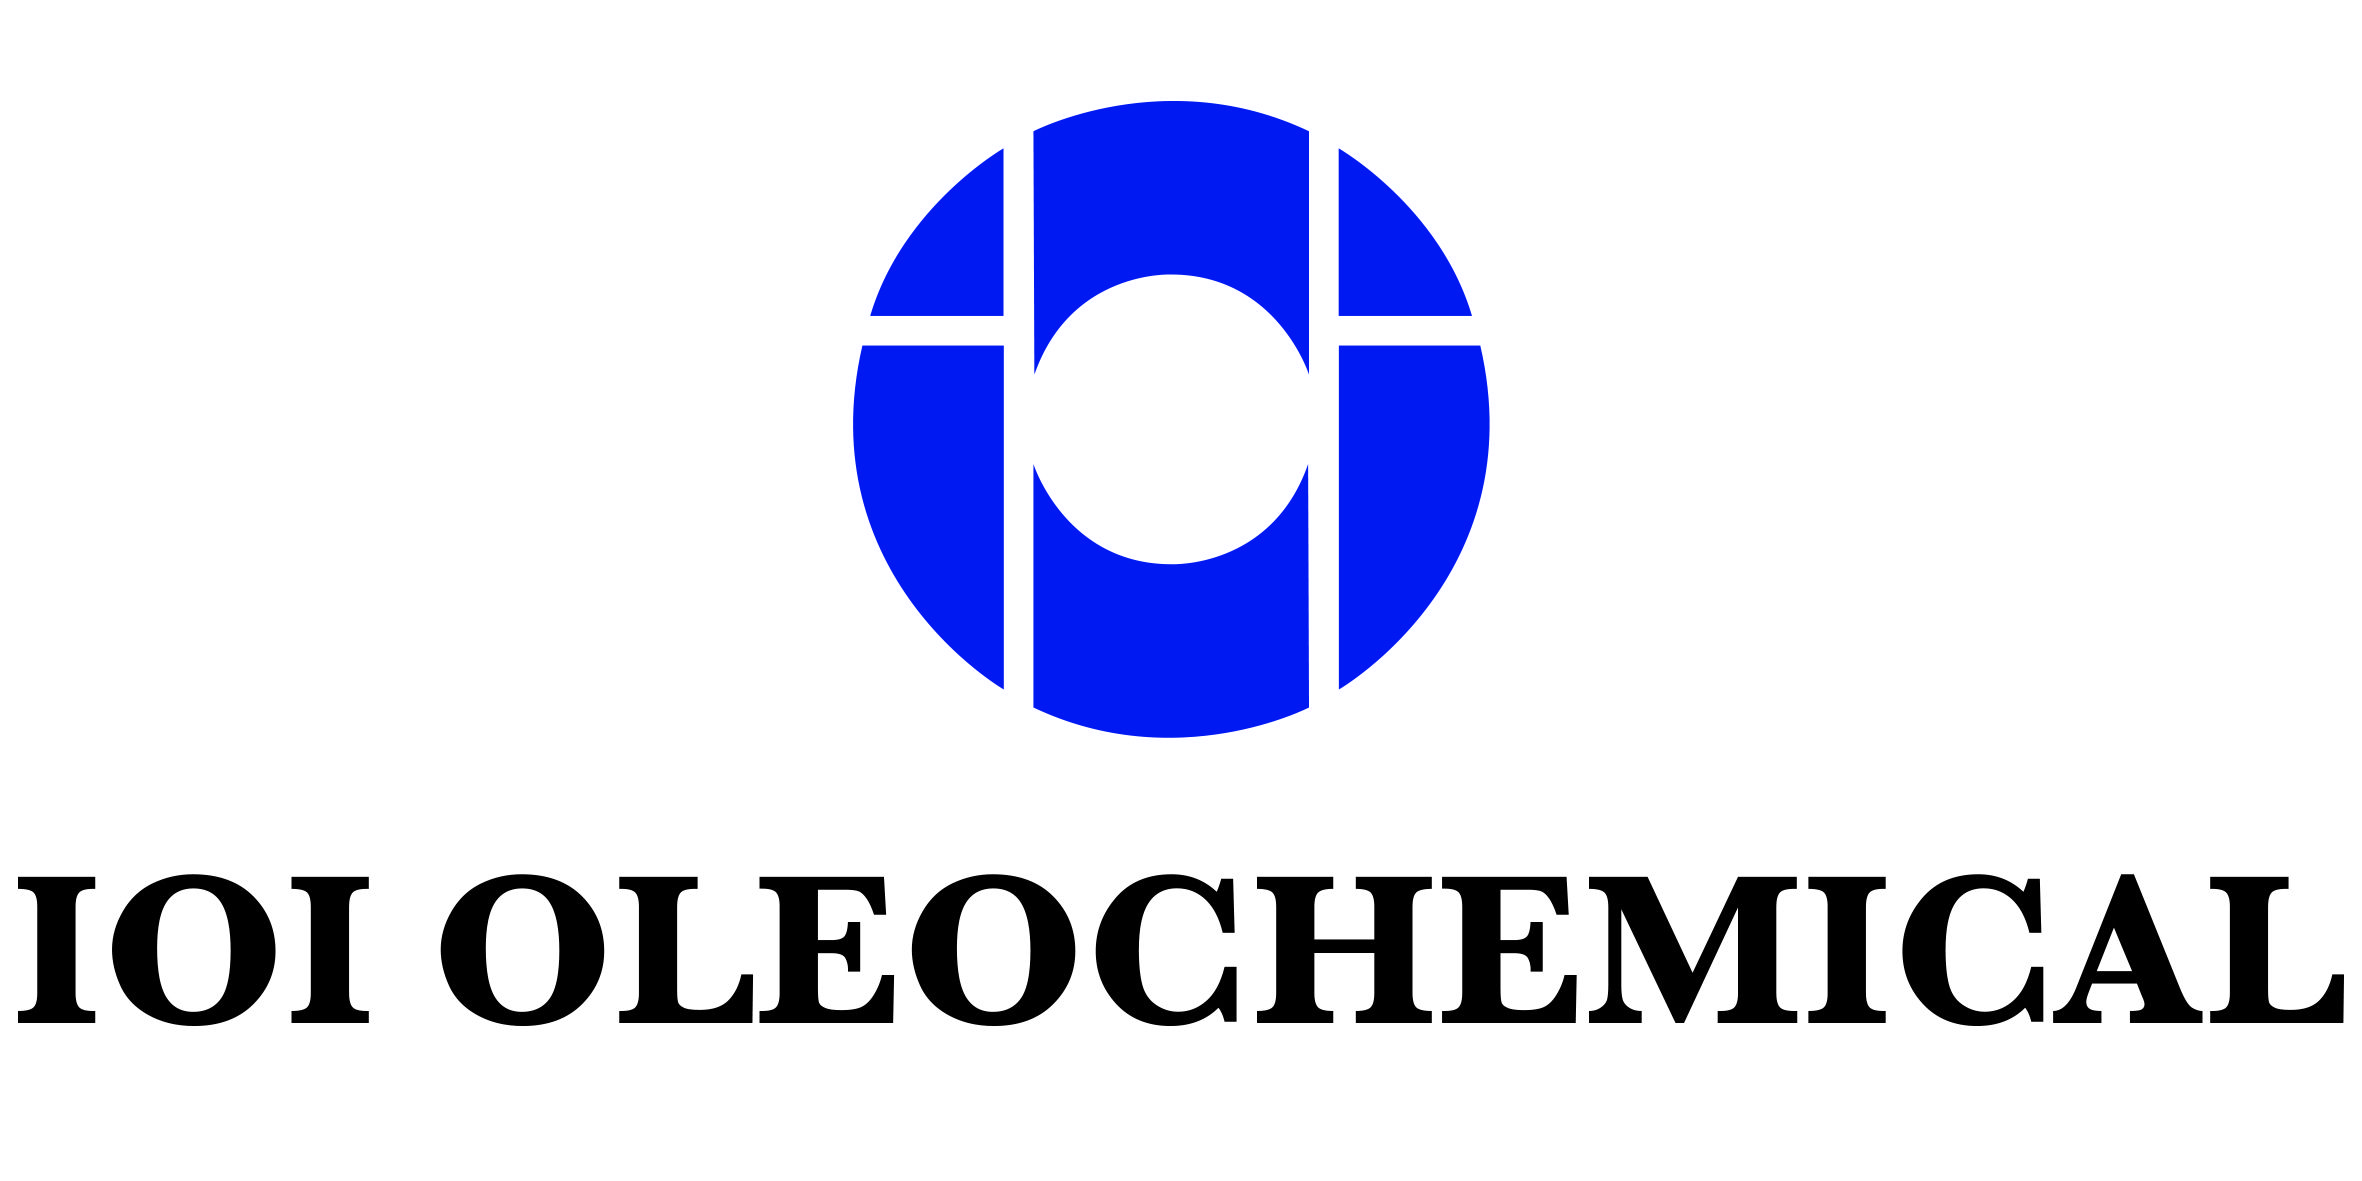 IOI Oleo GmbH